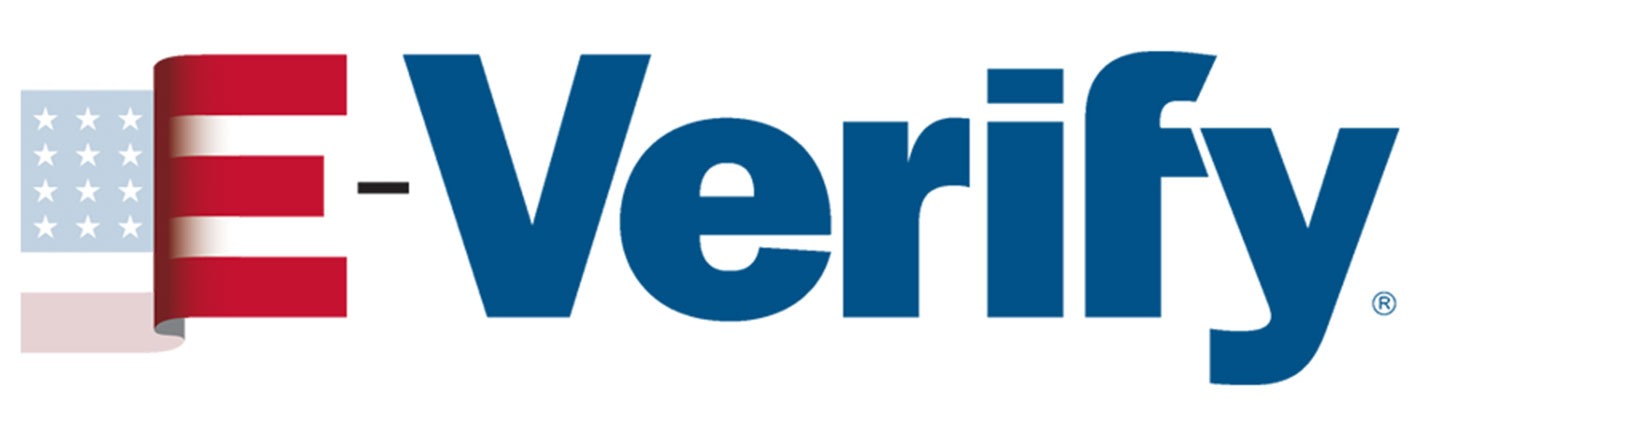 E-verify Logo